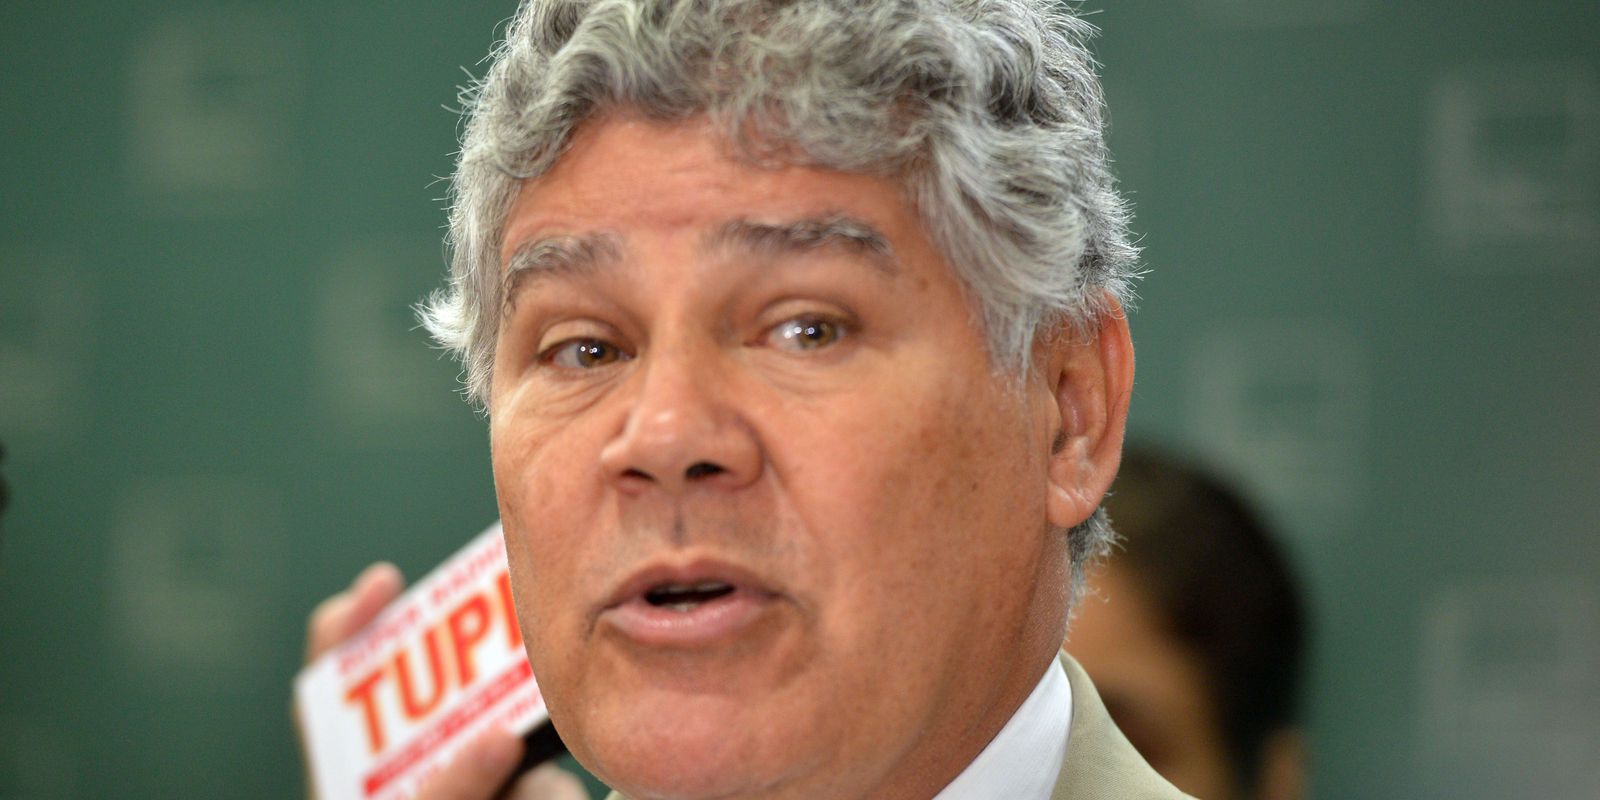 Gabriel Monteiro case: councilors denounce attacks on social networks